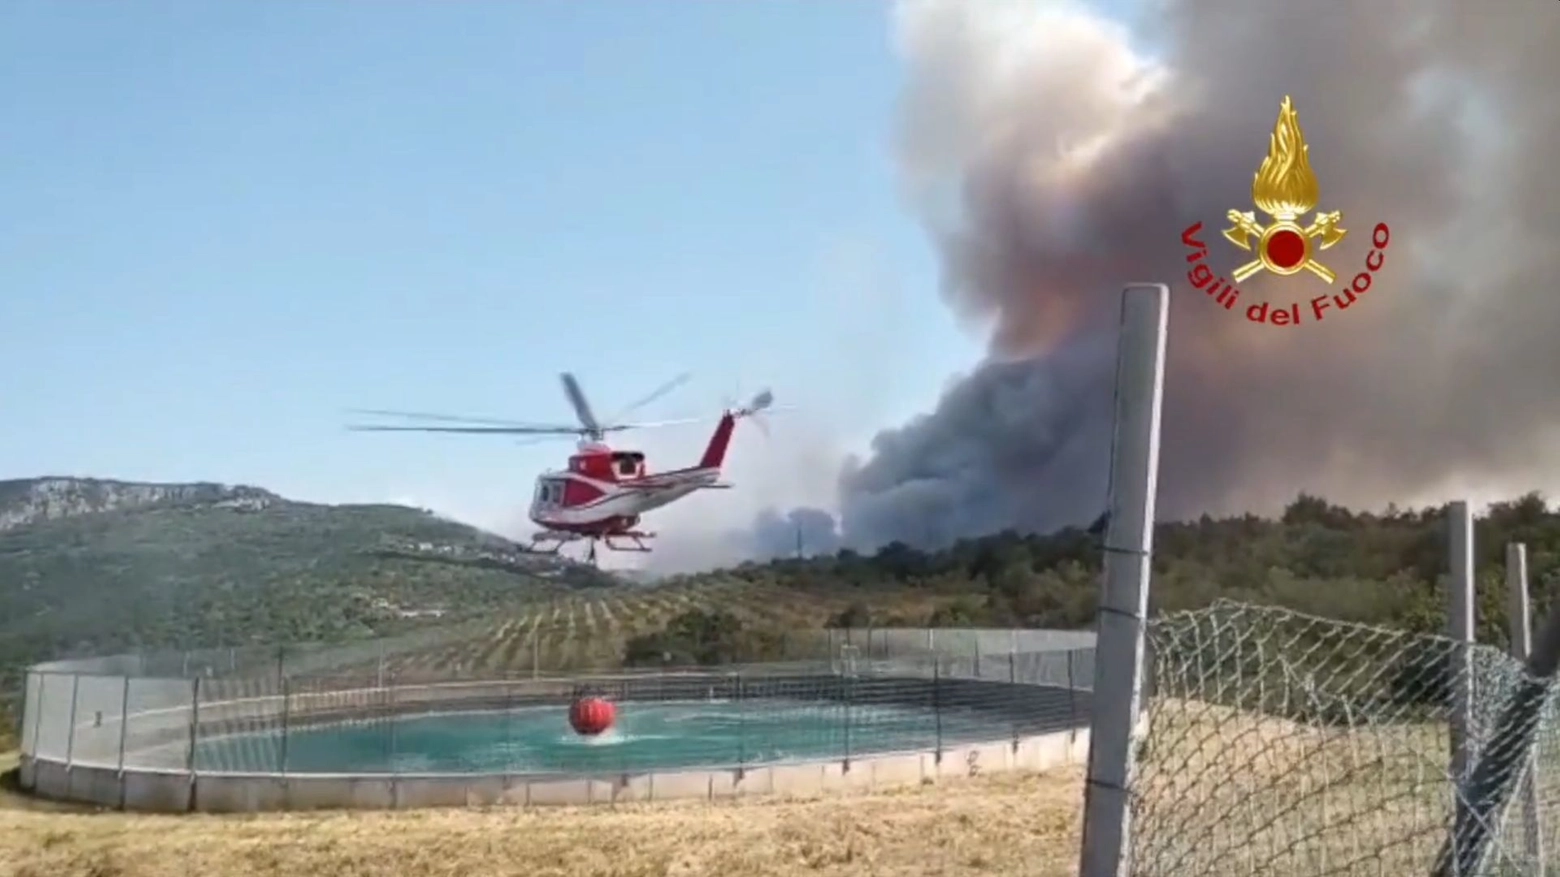 L'intervento dei vigili del fuoco a Prebenico, San Dorligo della Valle (Trieste)